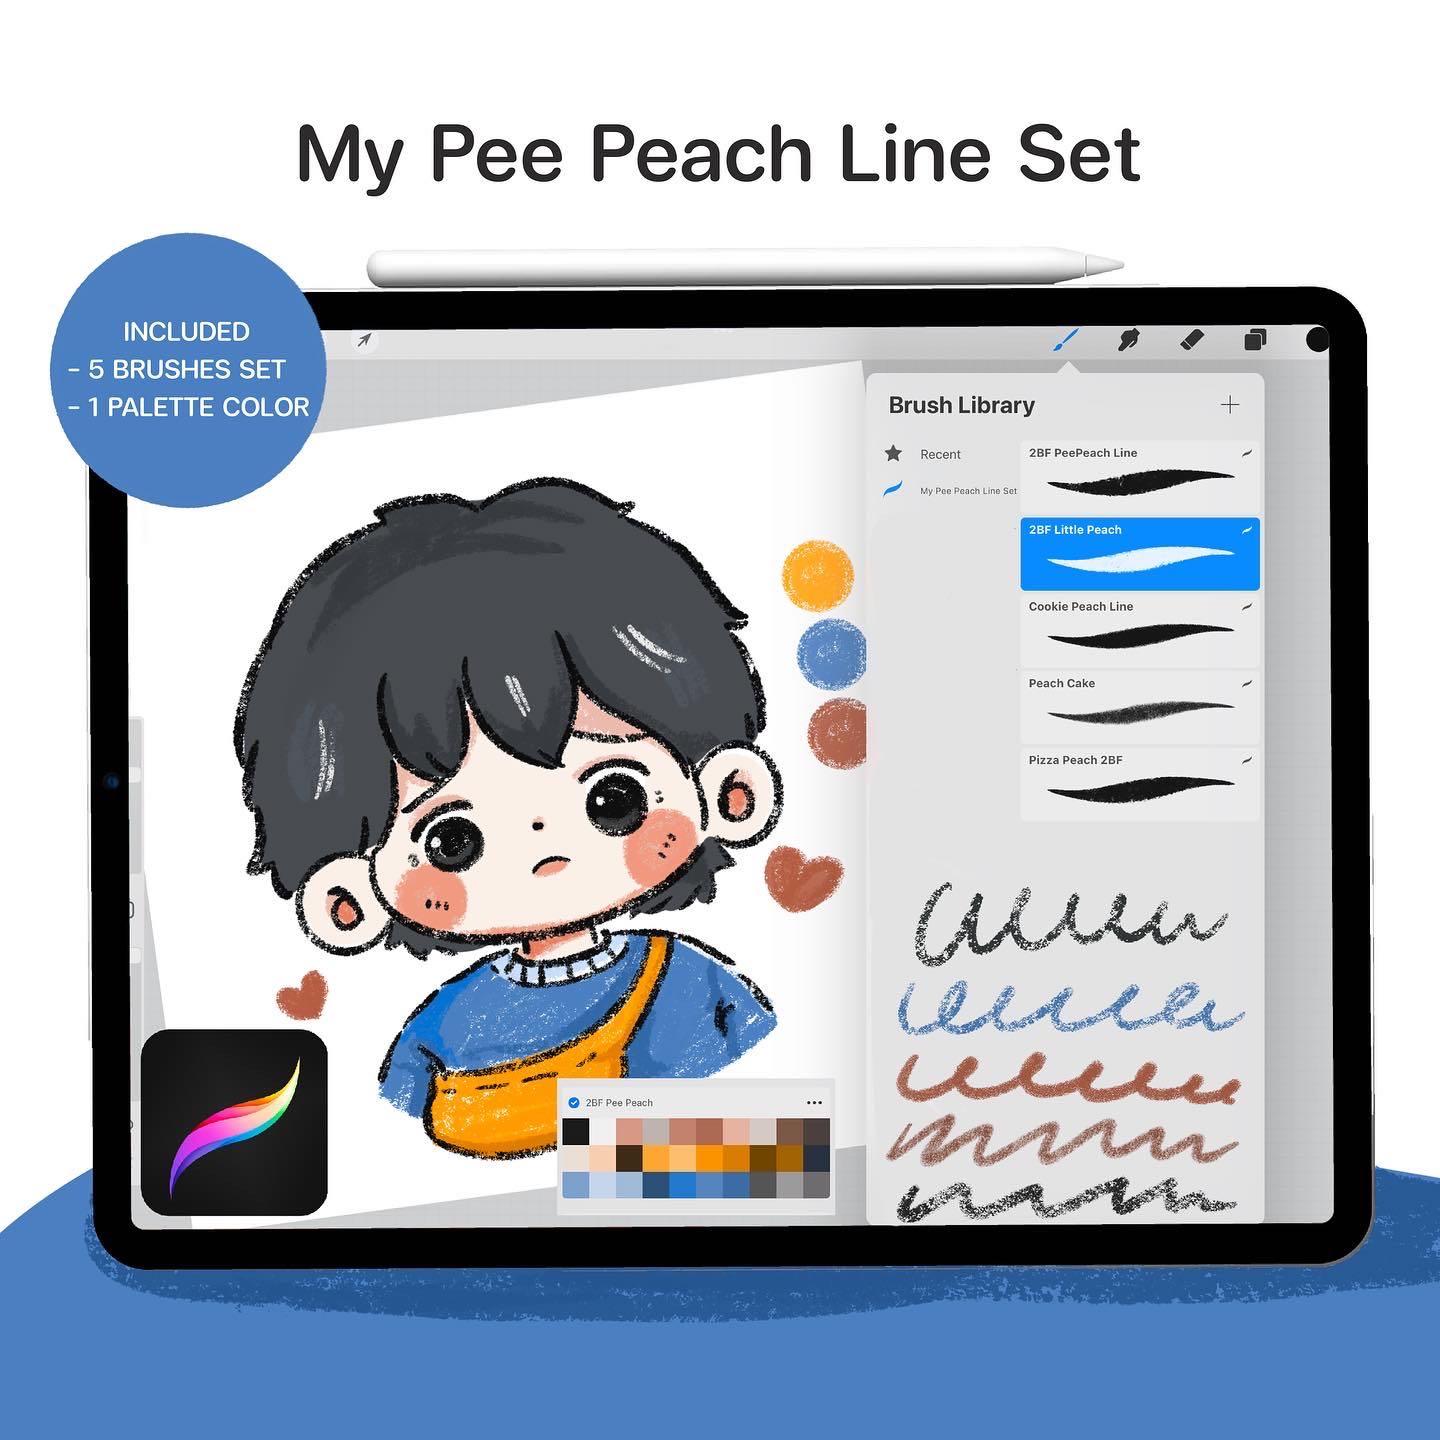 Pee peach line set